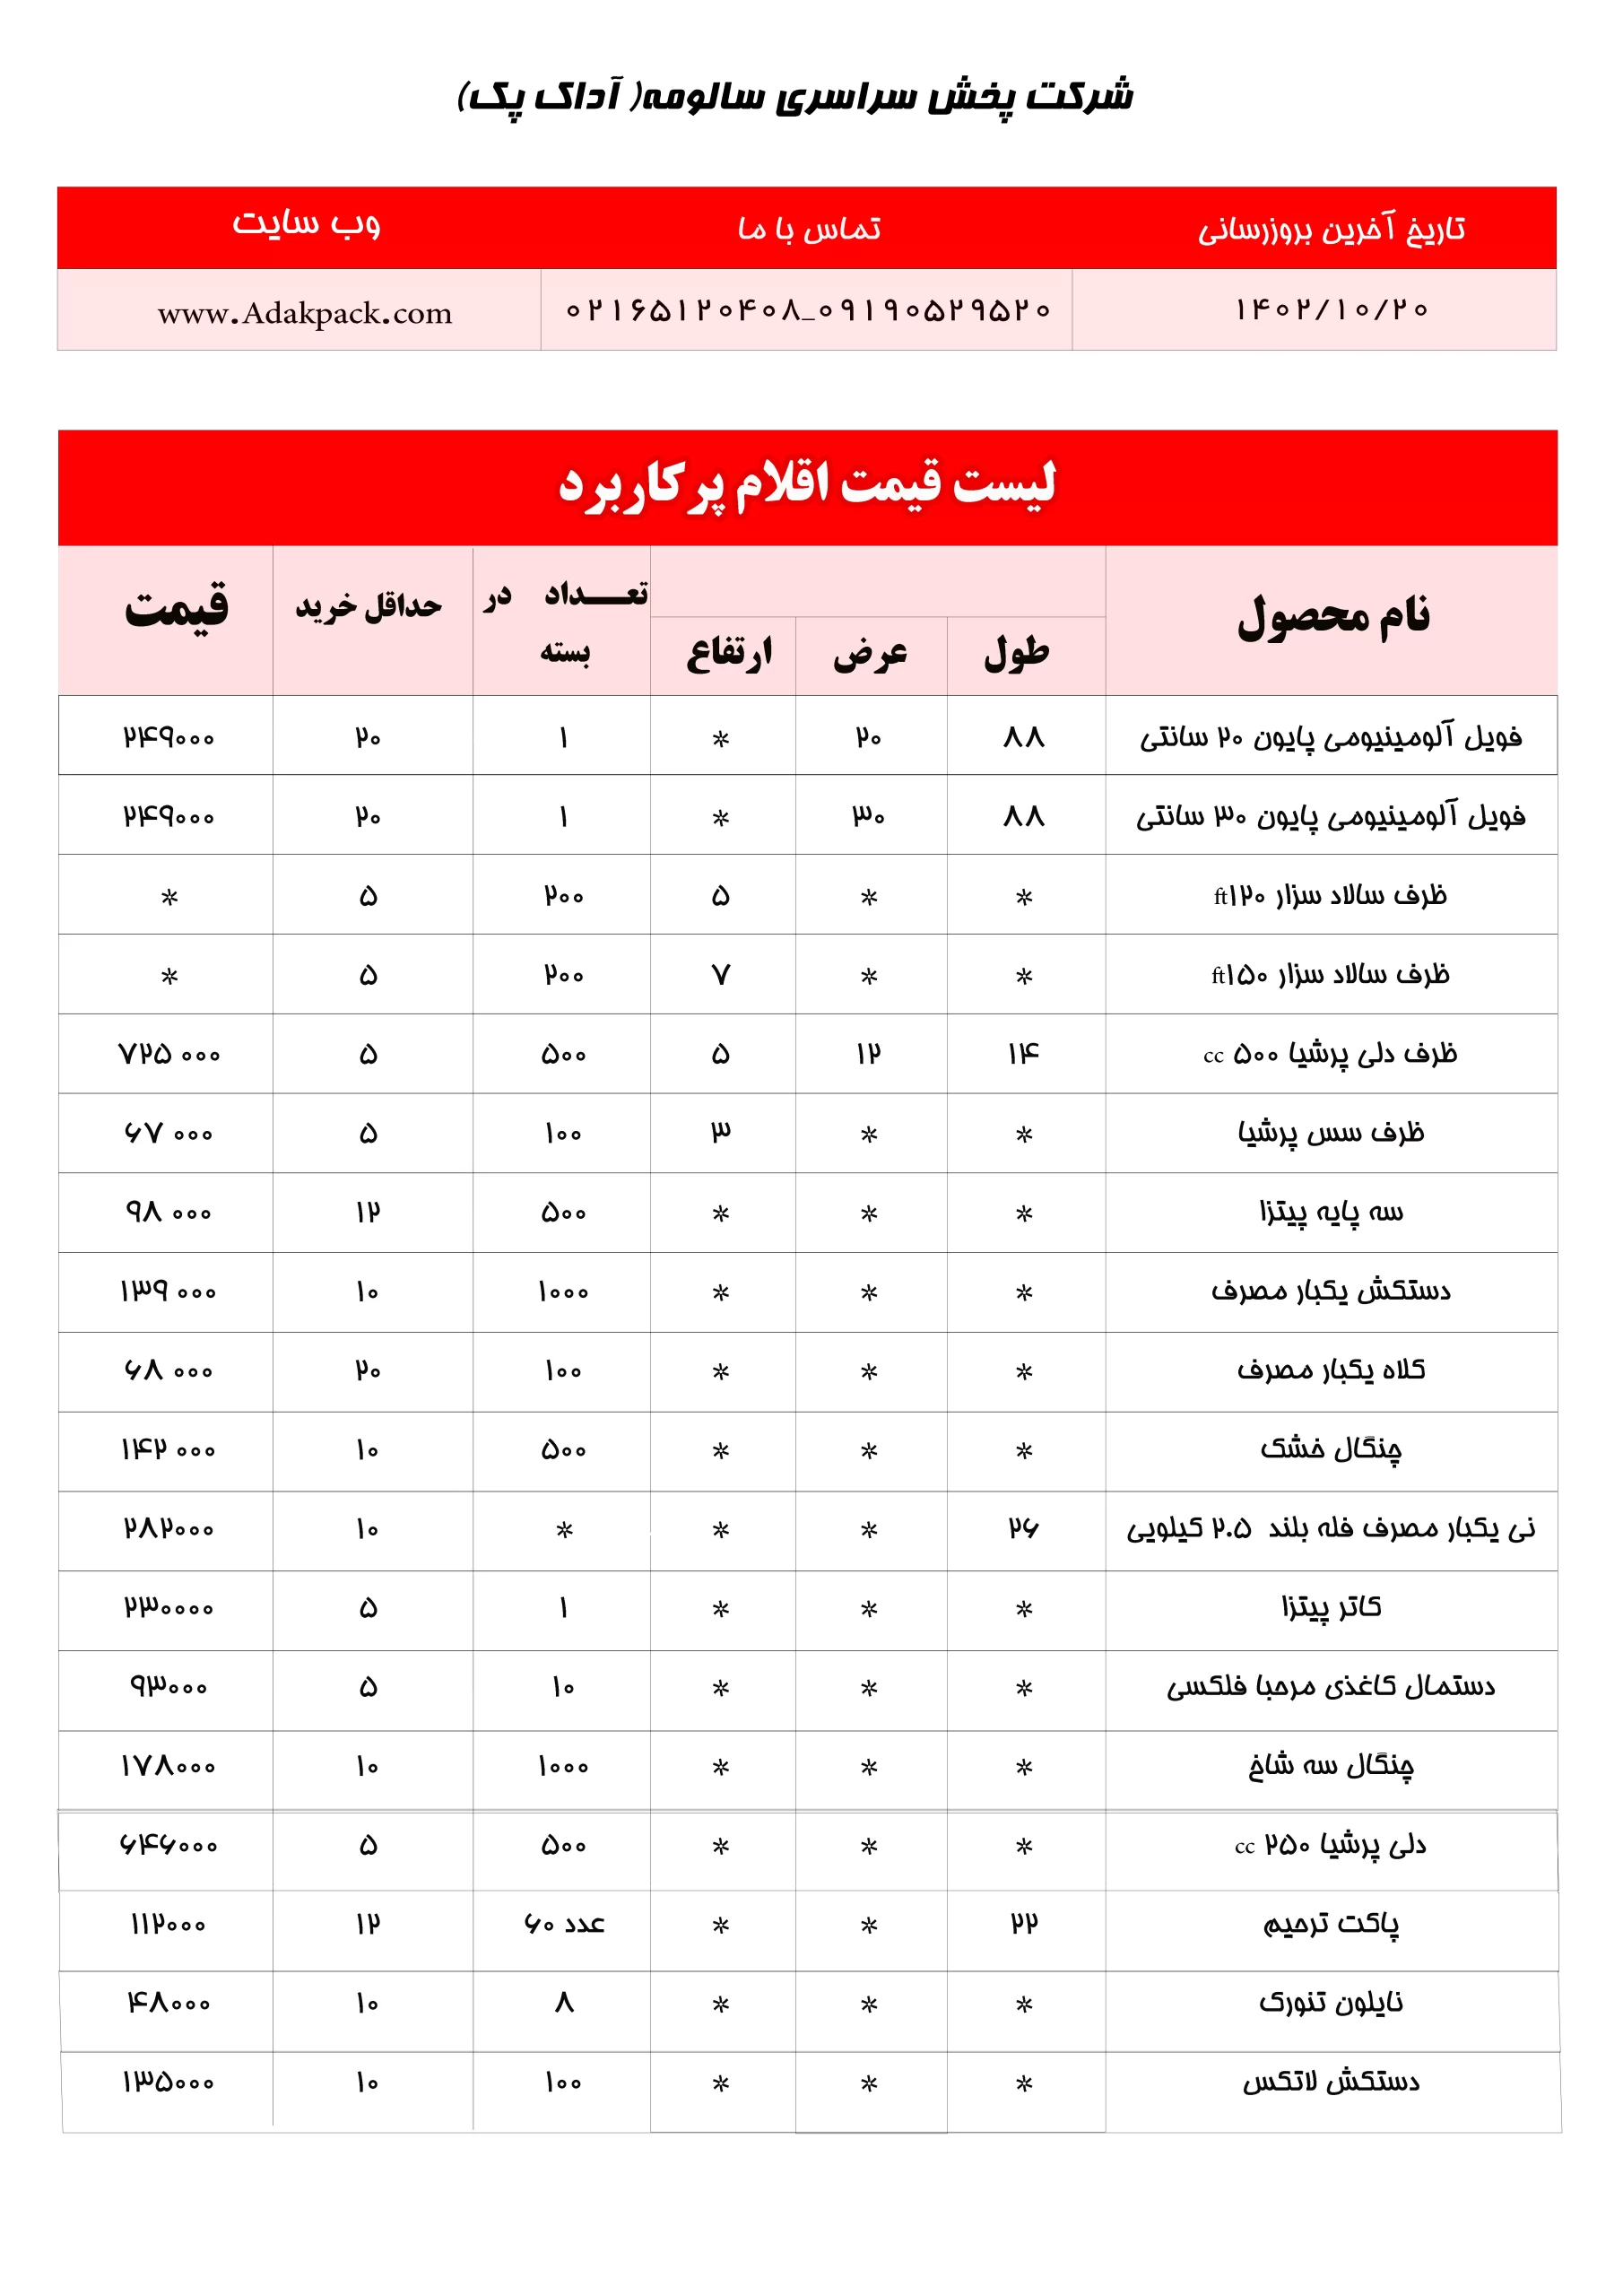 لیست قیمت اقلام پرکاربرد فست فود در آداک پک